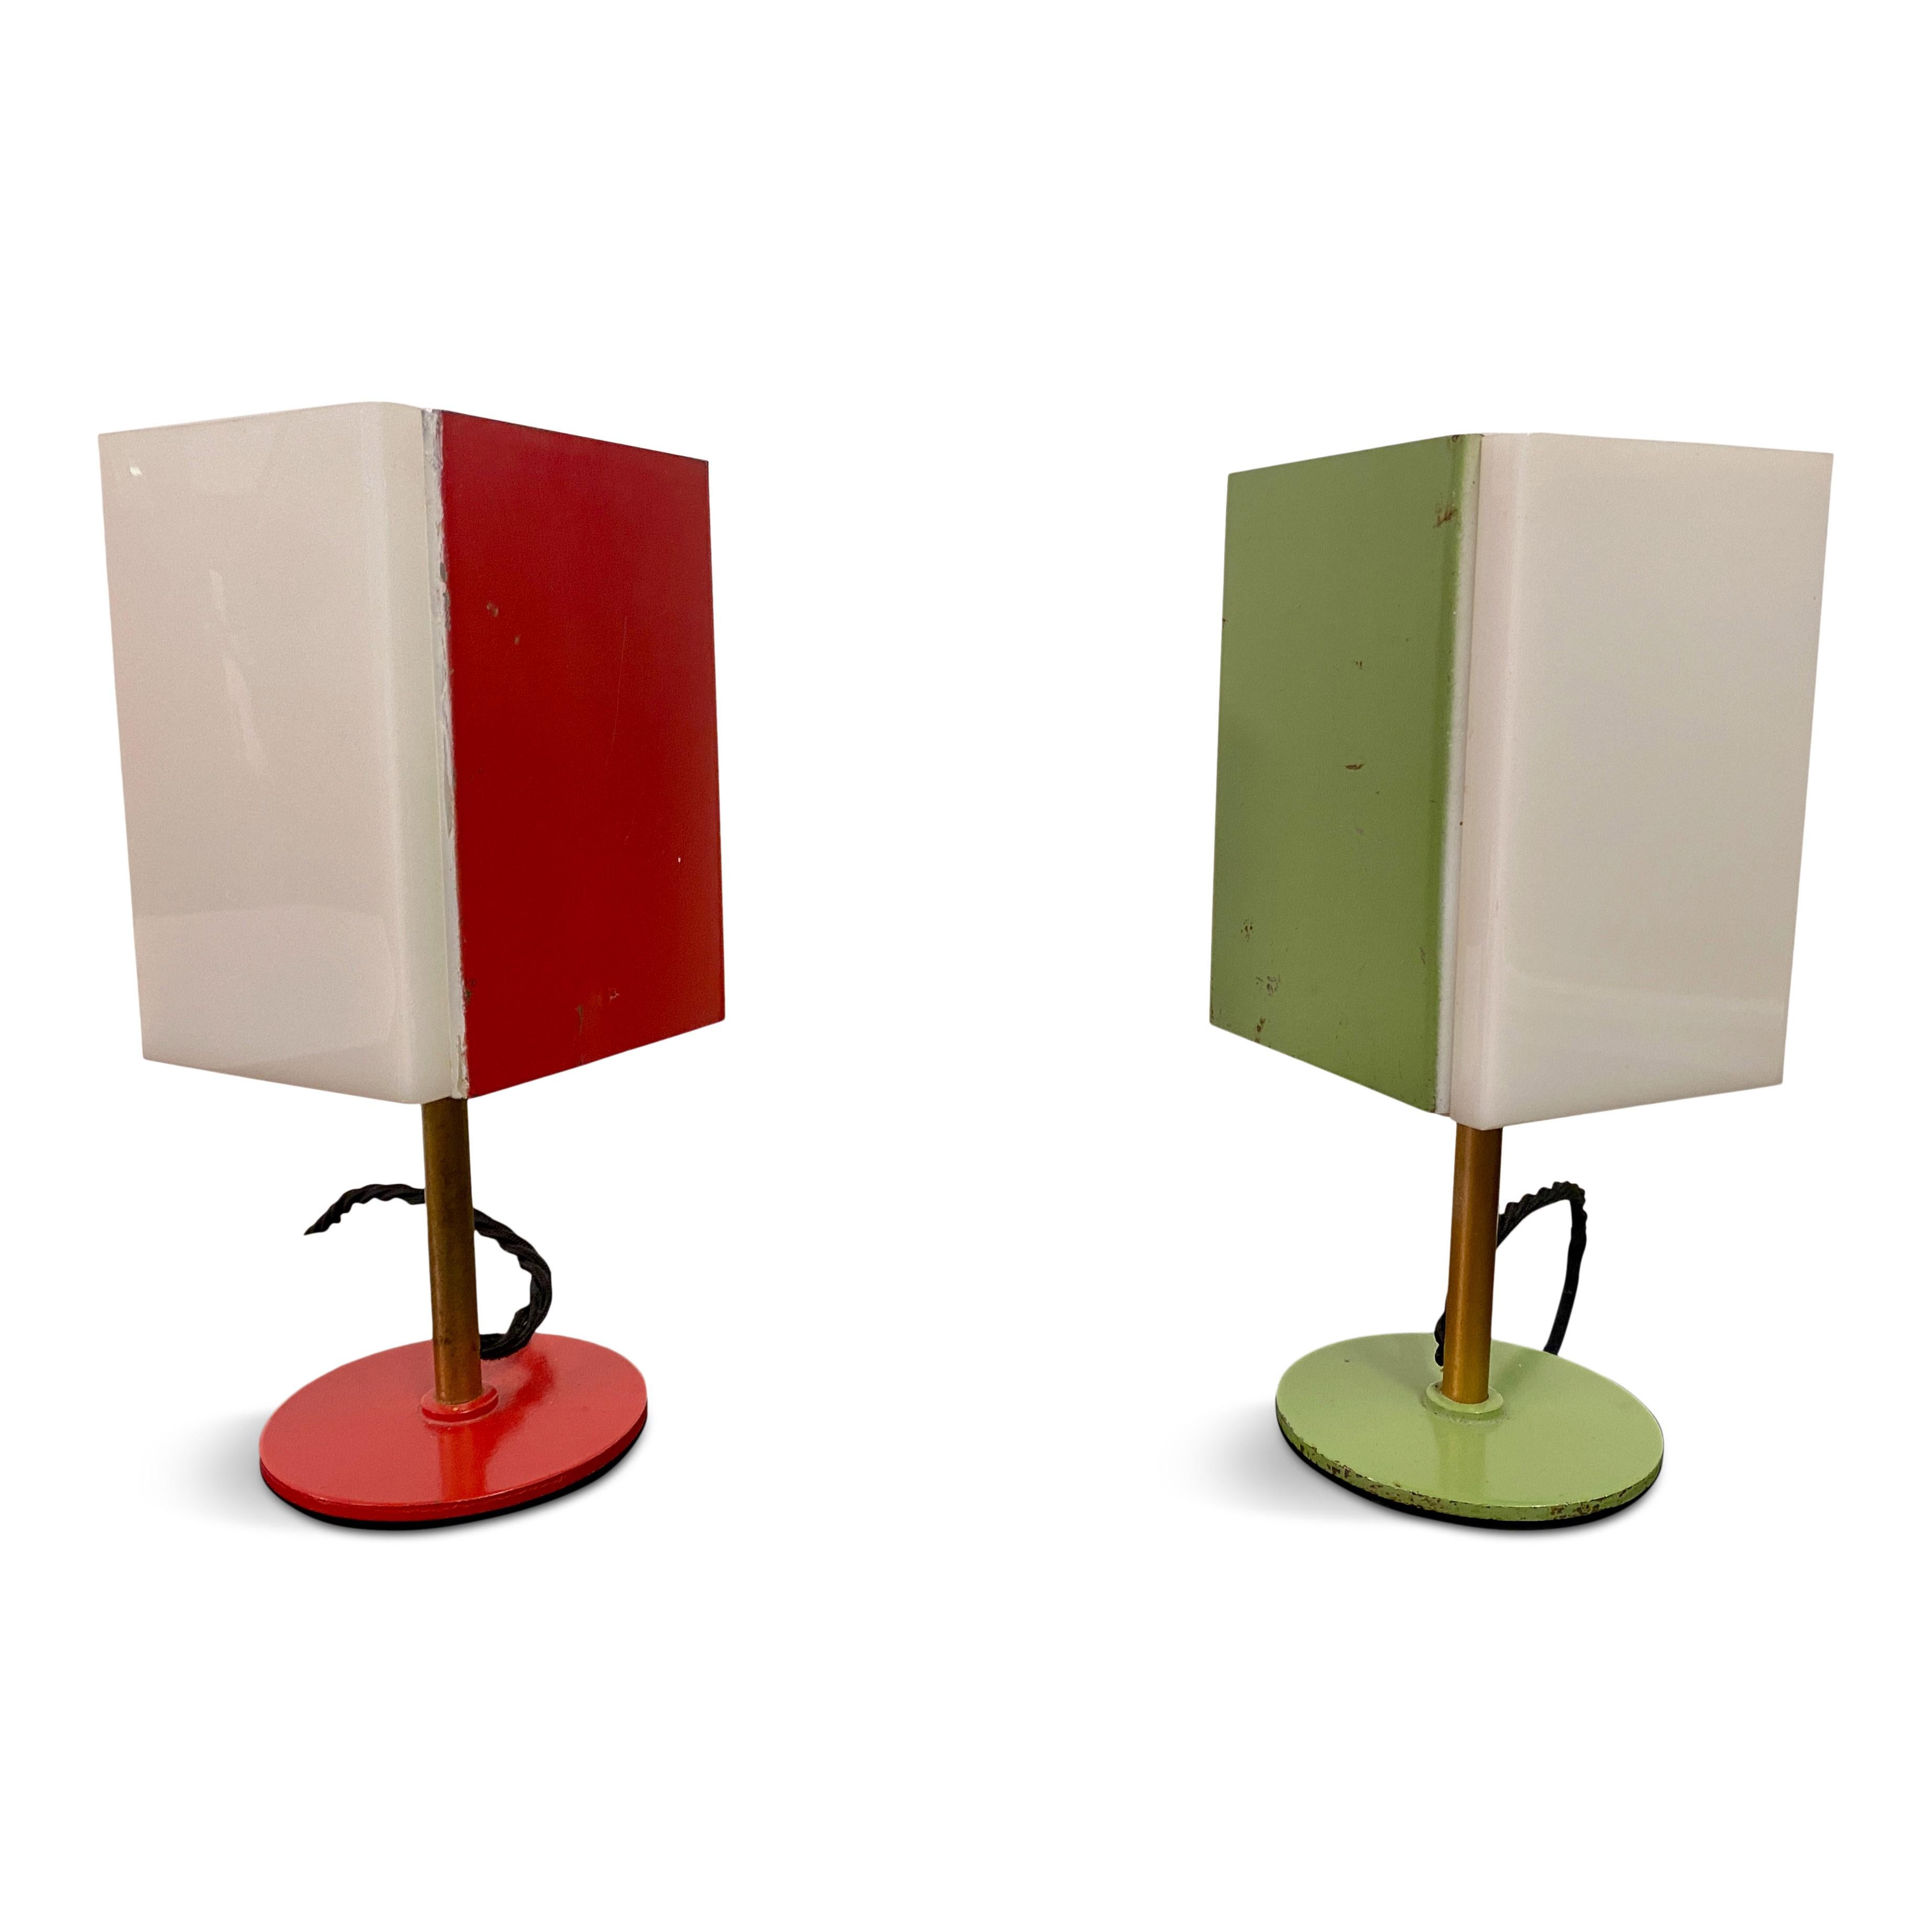 Paar Tischlampen

Plexiglas und farbiges Metall

Sockel aus lackiertem Stahl

Schwarzes Corde-Flex

Italien 1950er/1960er Jahre